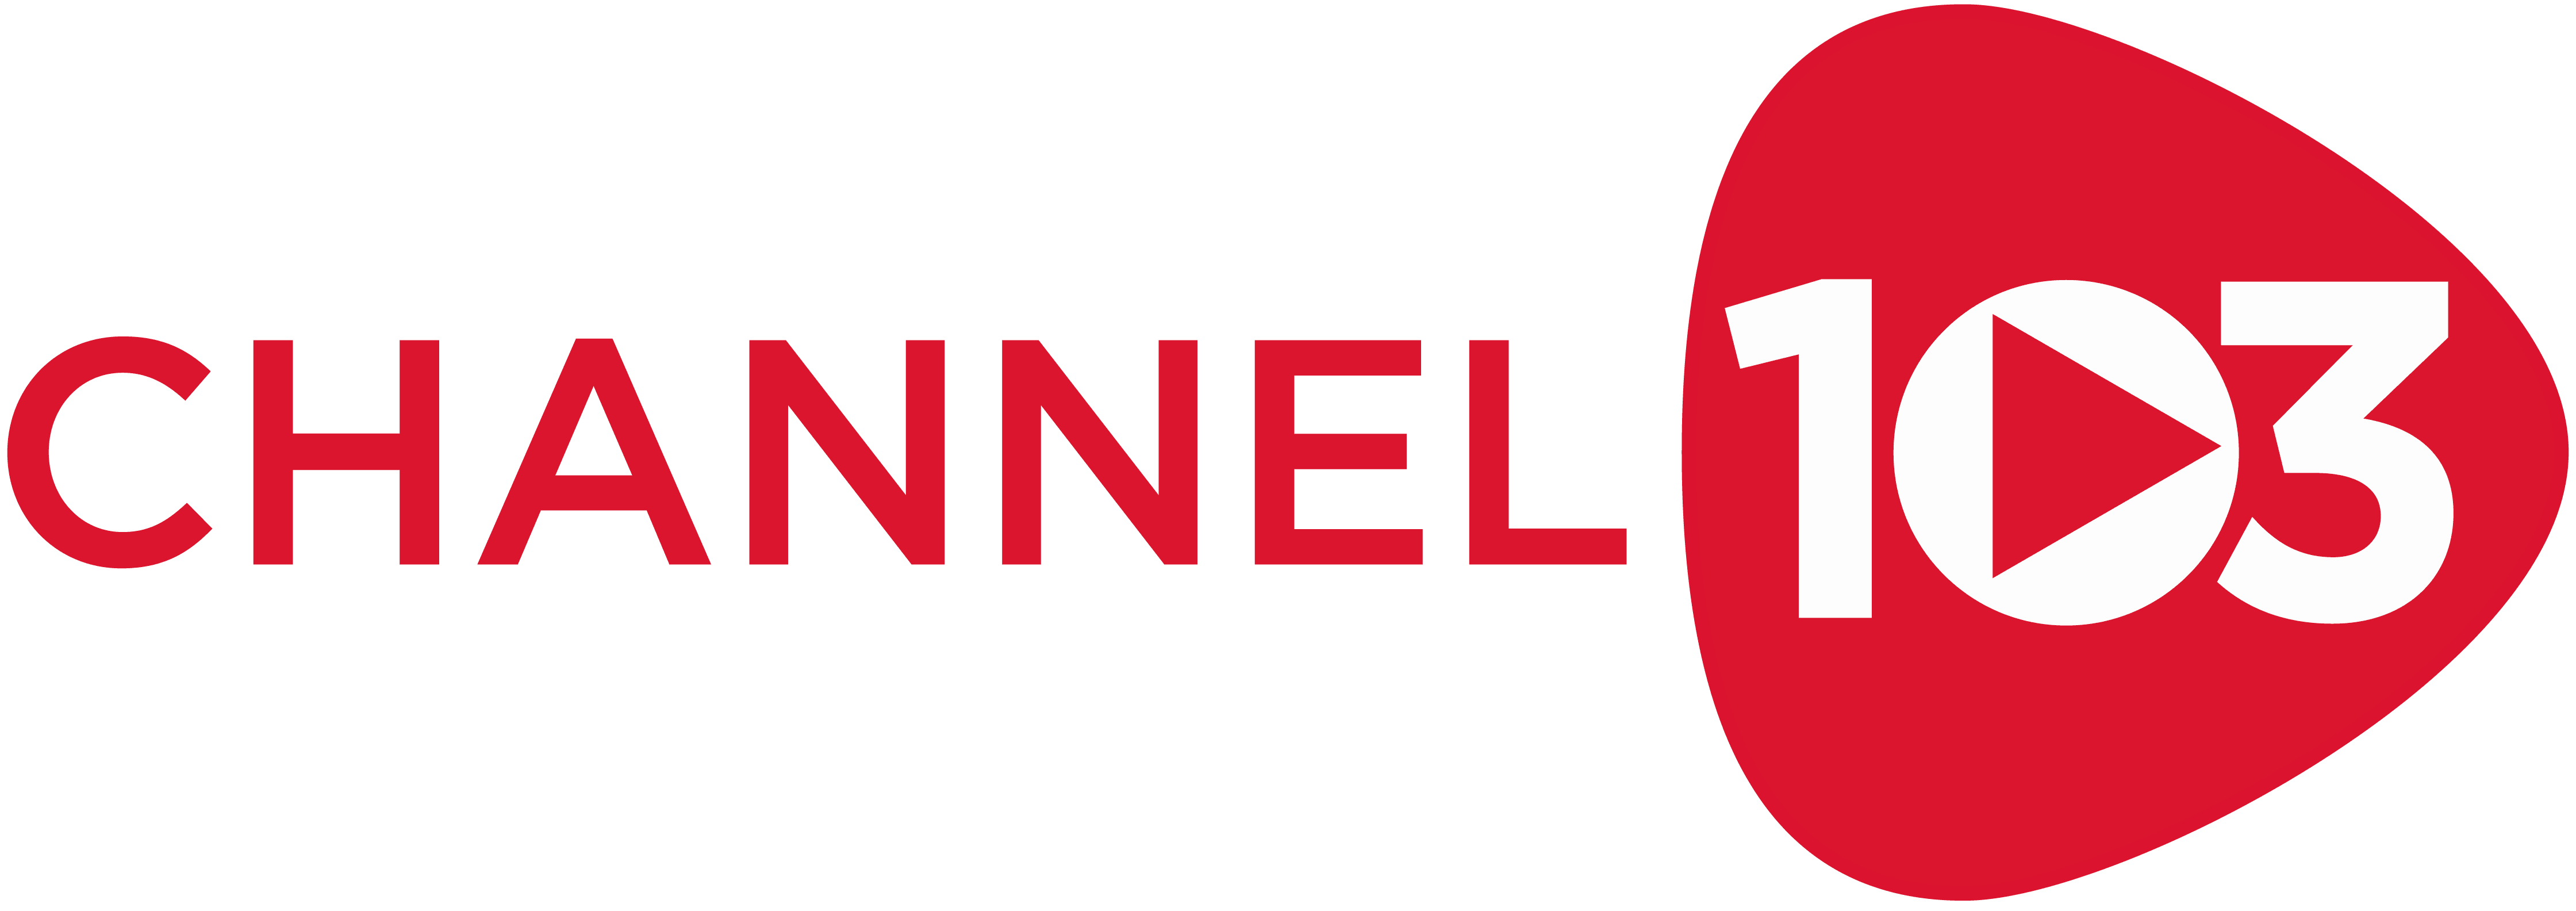 Channel 103 Logo